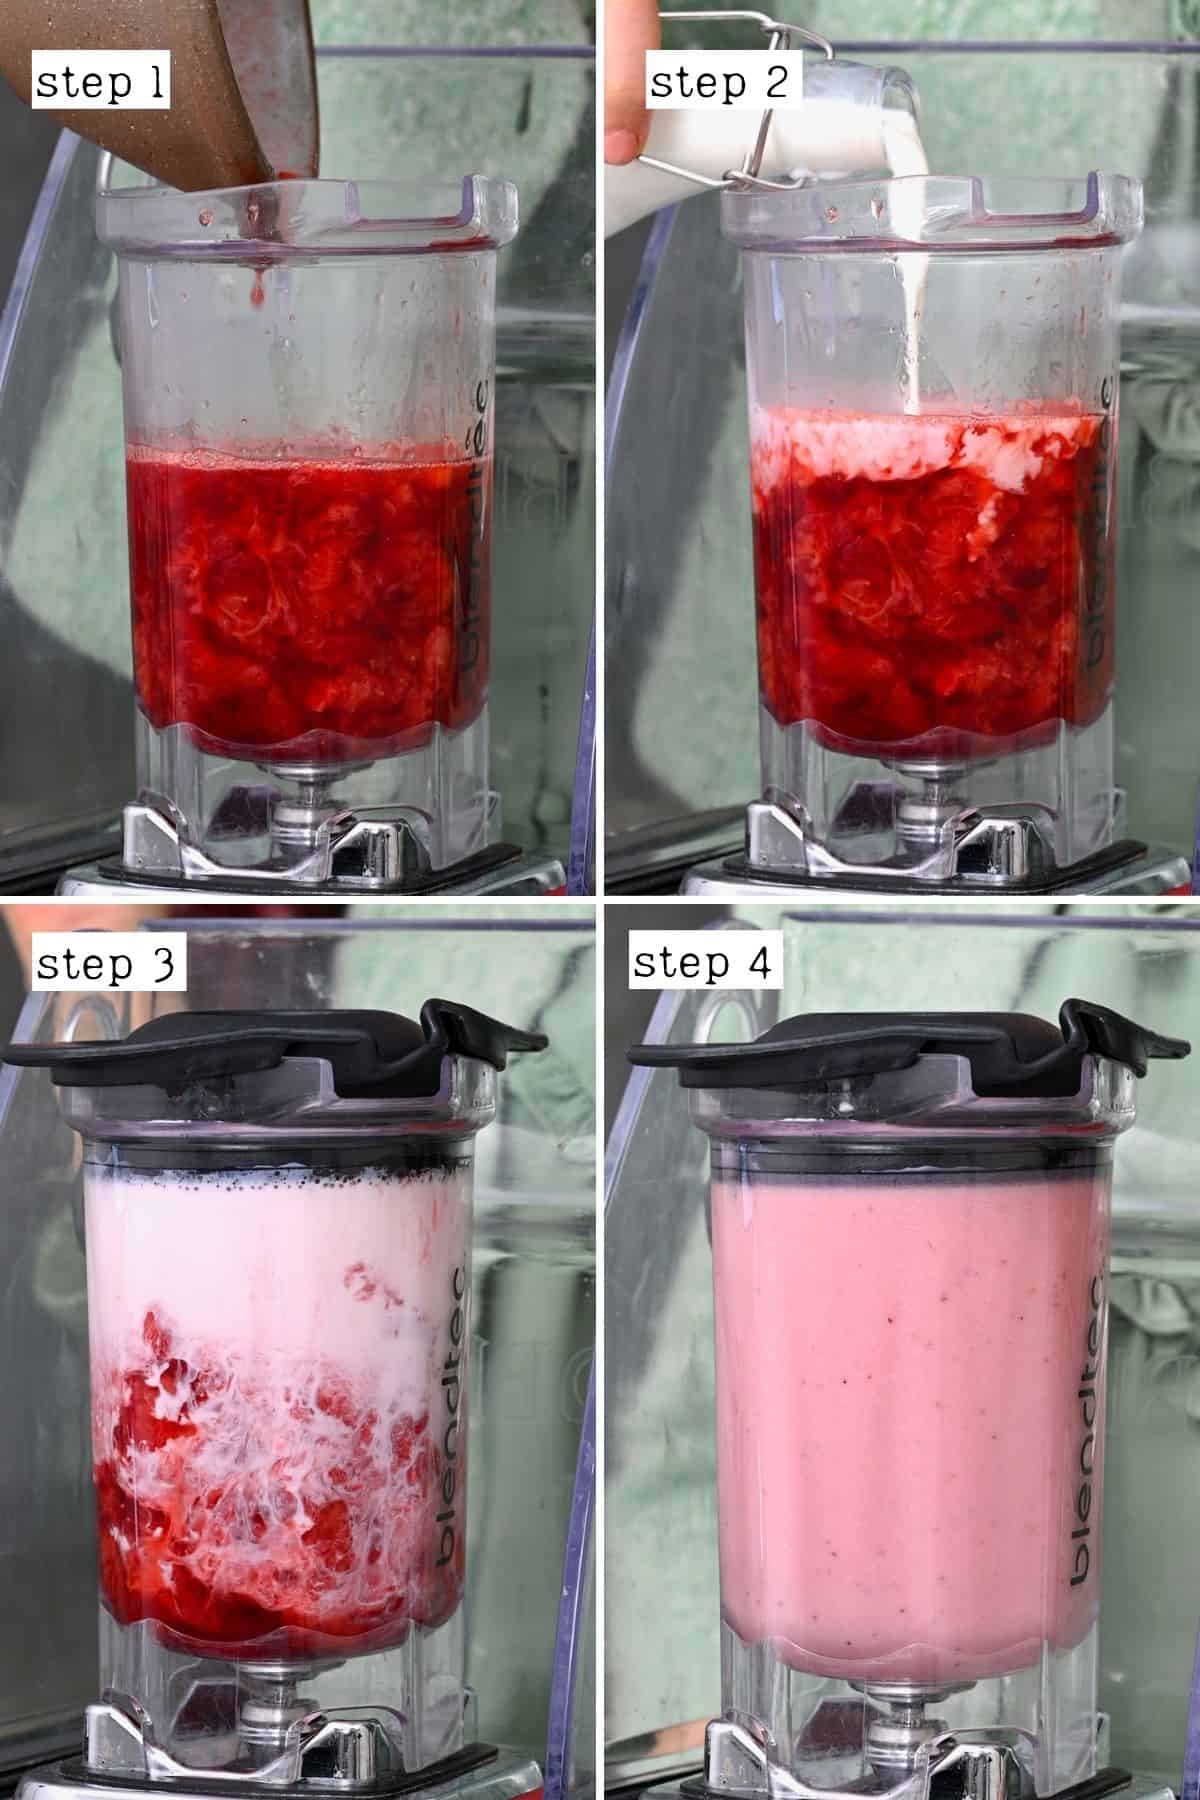 Steps for blending strawberry milk